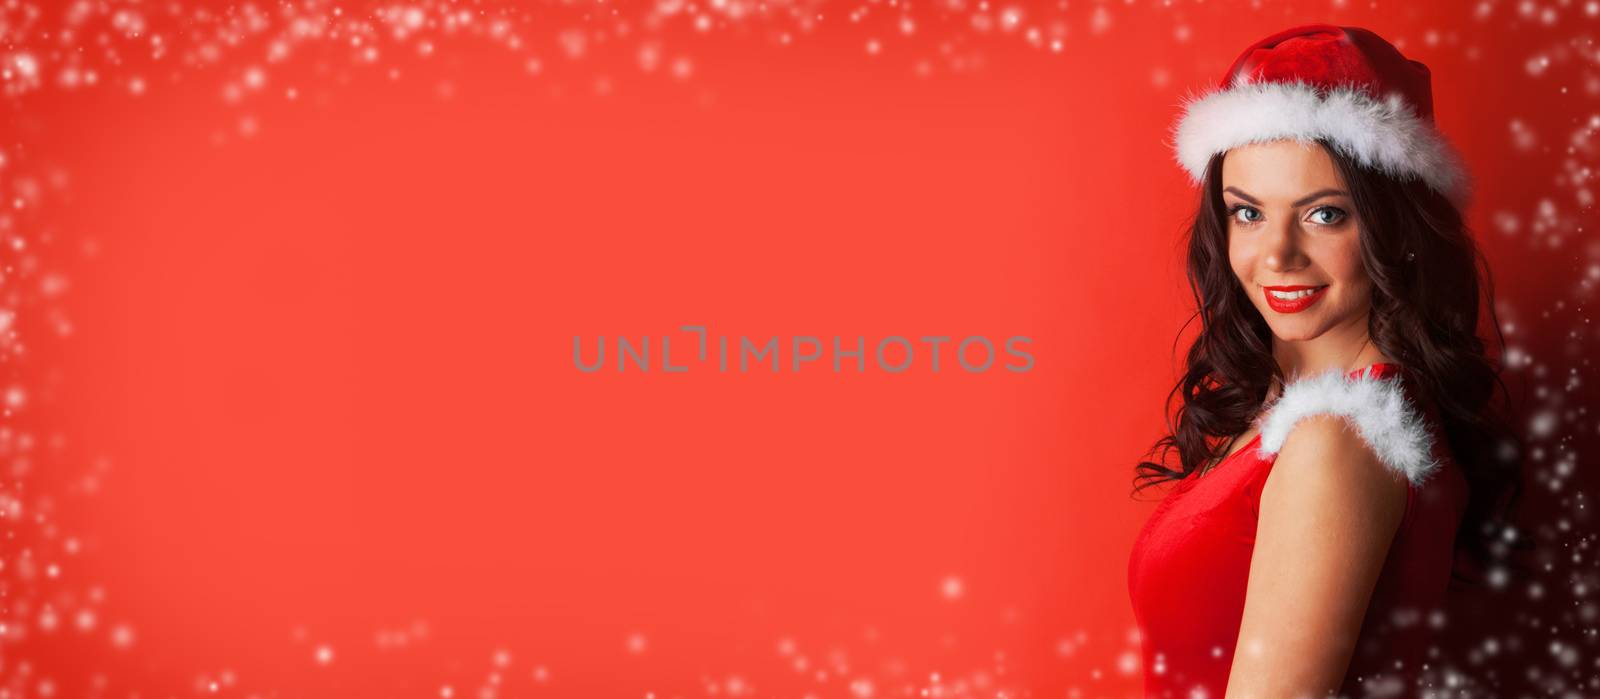 Pin-up Santa girl by Yellowj